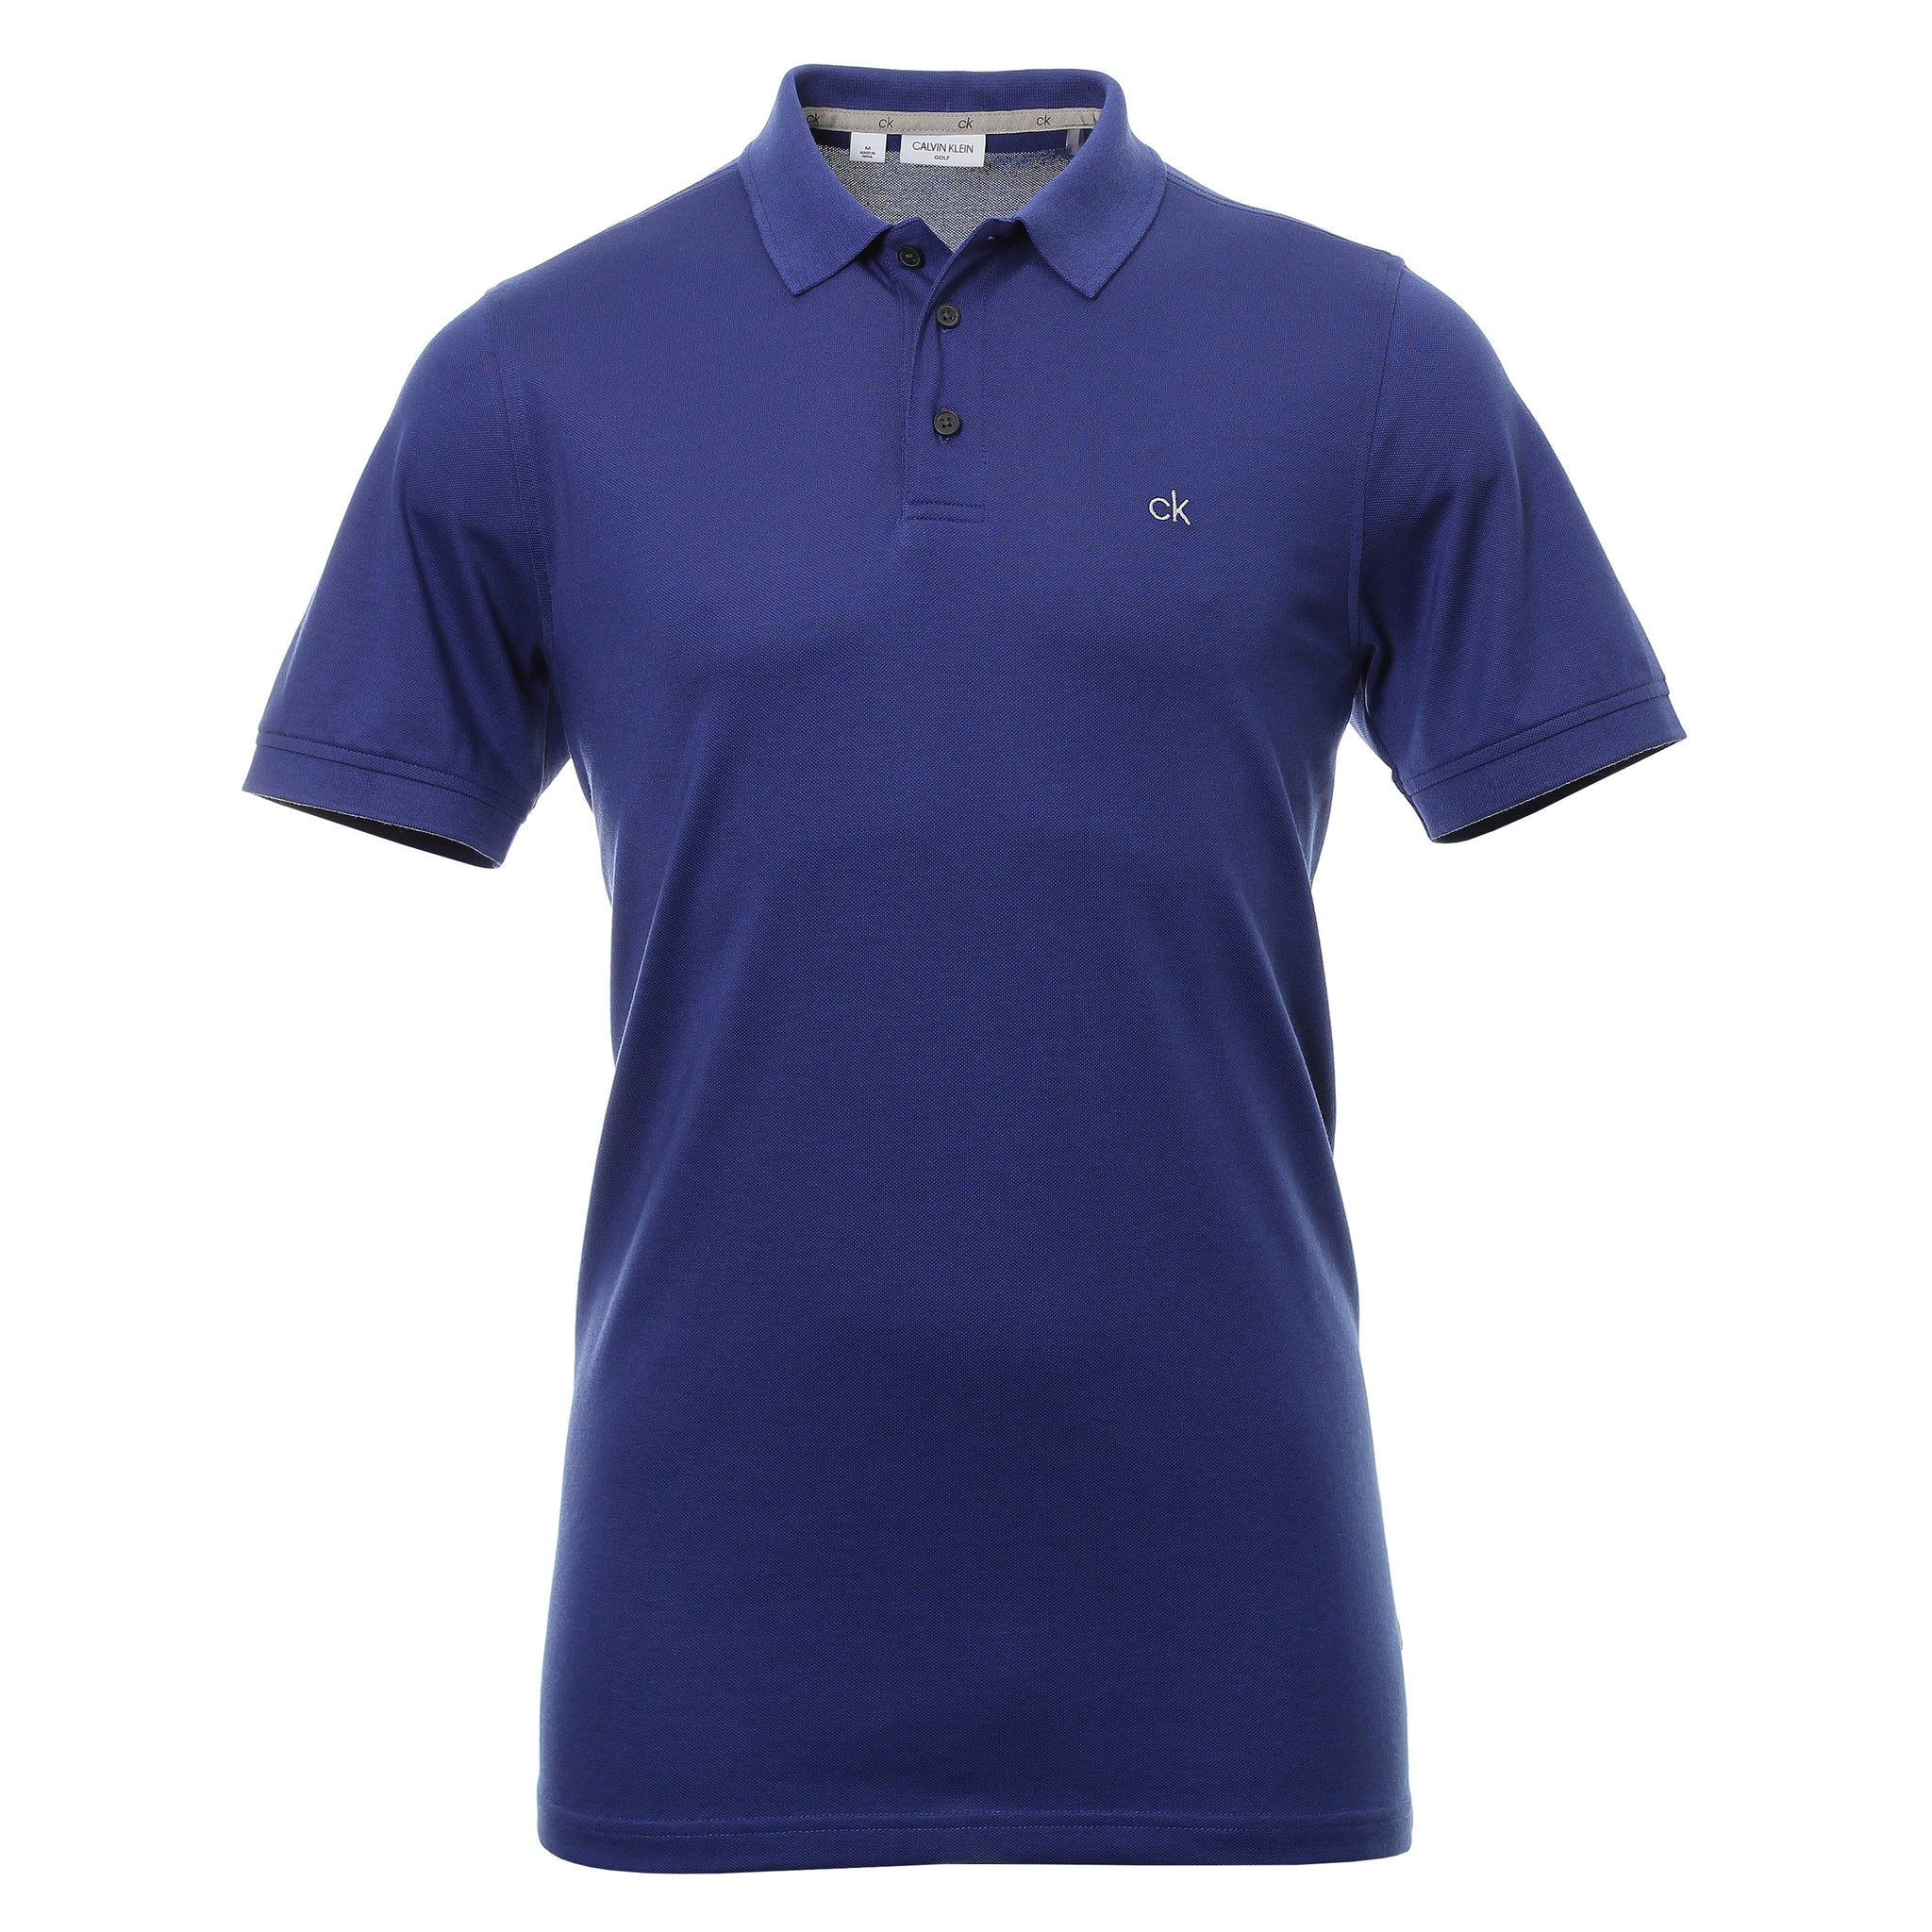 calvin-klein-golf-planet-shirt-c9579-indigo